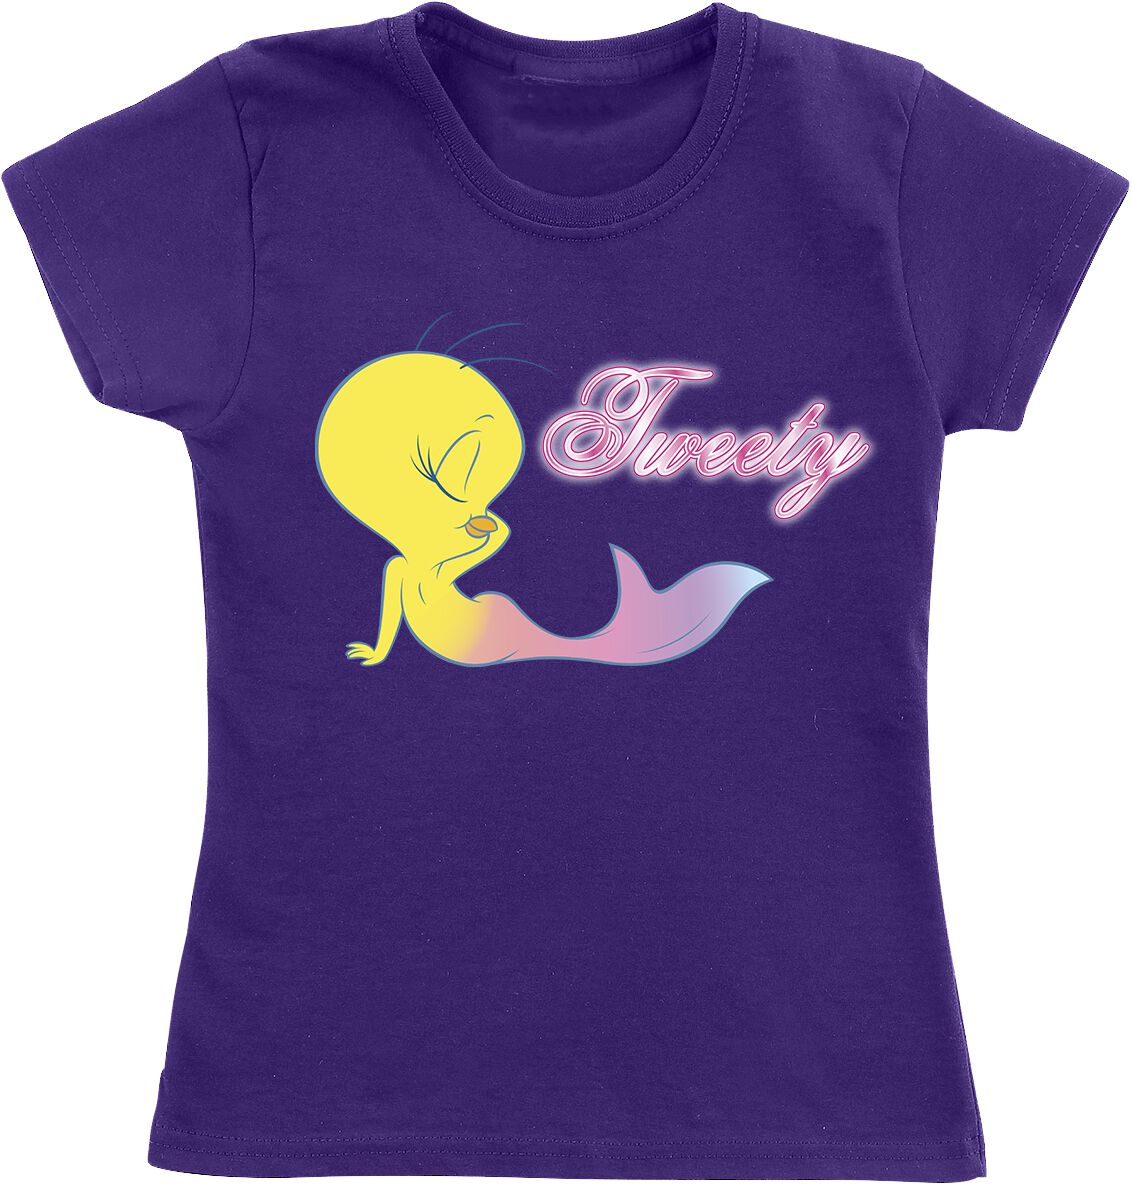 Looney Tunes Kids - Tweety - Mermaid T-Shirt lilac